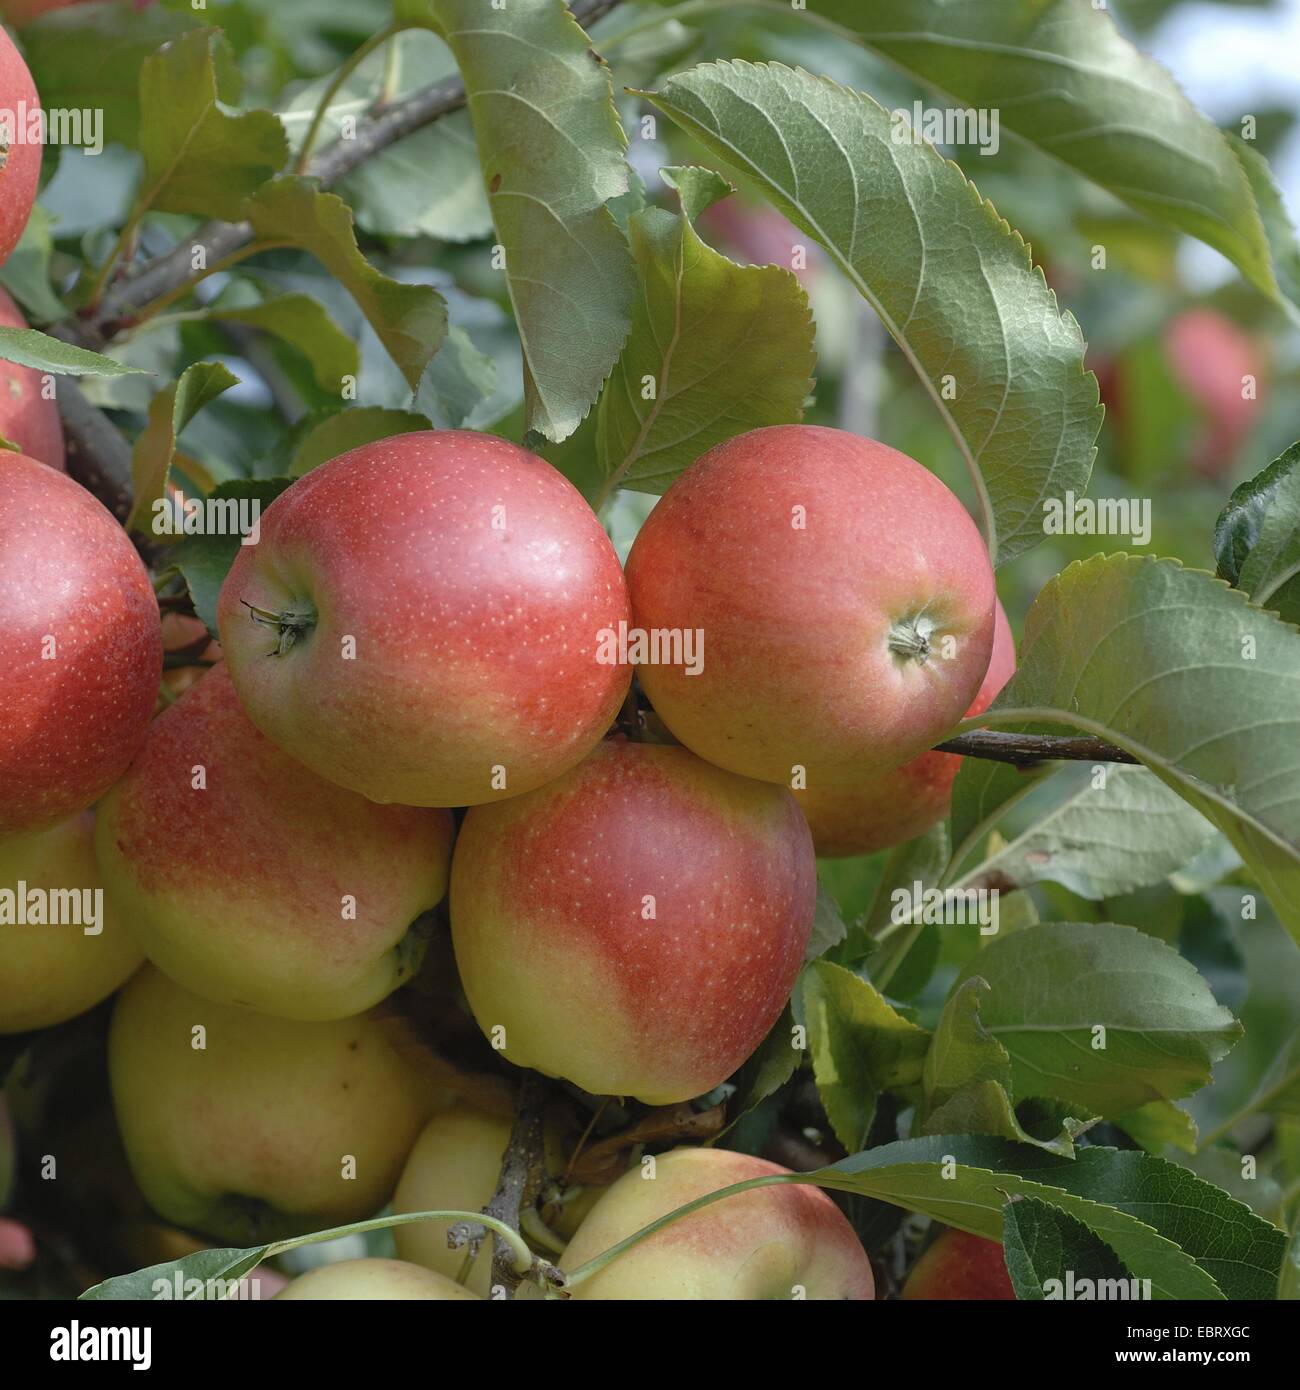 Melo (Malus domestica " Gala ", Malus domestica di gala), cultivar Gala, le mele su un albero Foto Stock